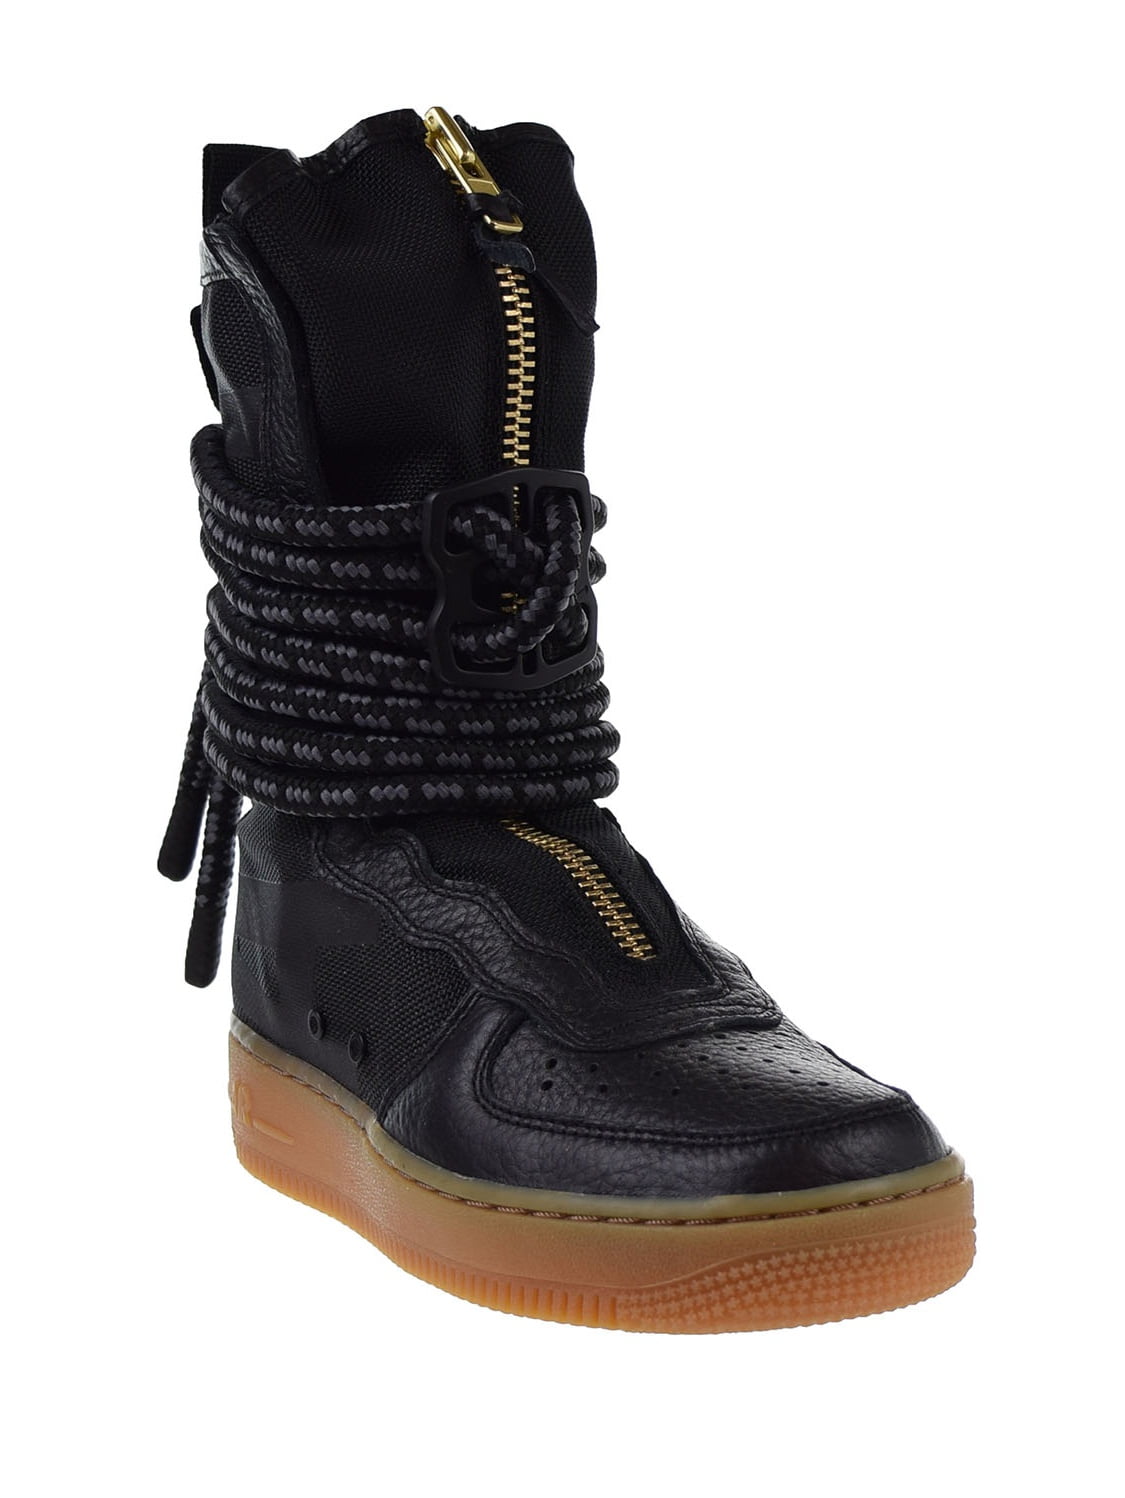 Nike SF Air Force 1 High Top Womens Boots Black/Gum Light Brown/Black  aa3965-001 